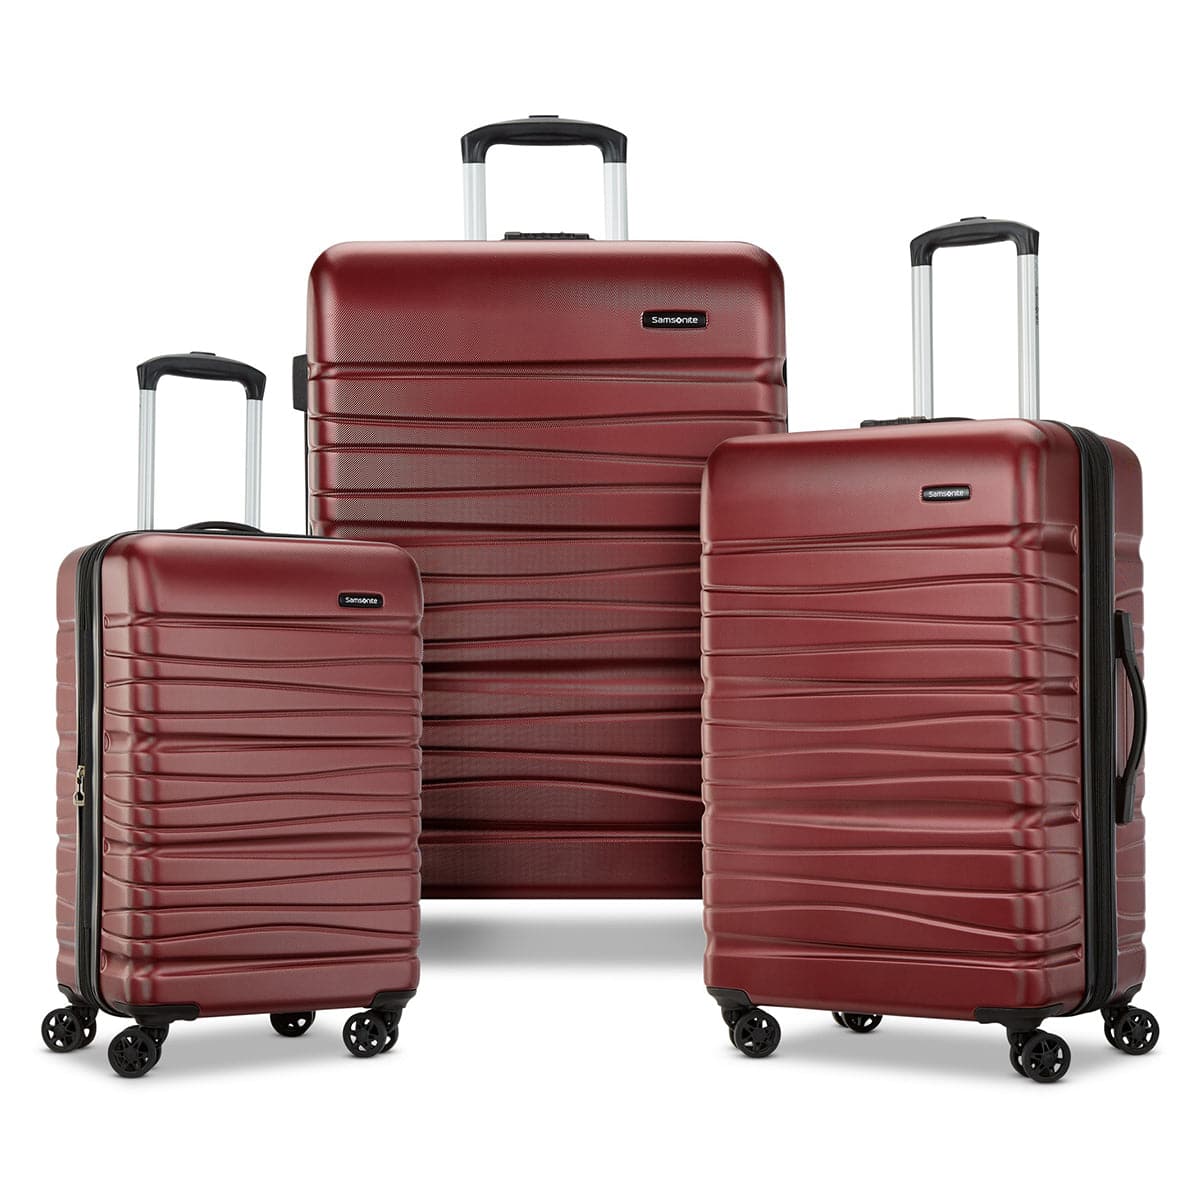 Samsonite Evolve SE 3-Piece Luggage Set